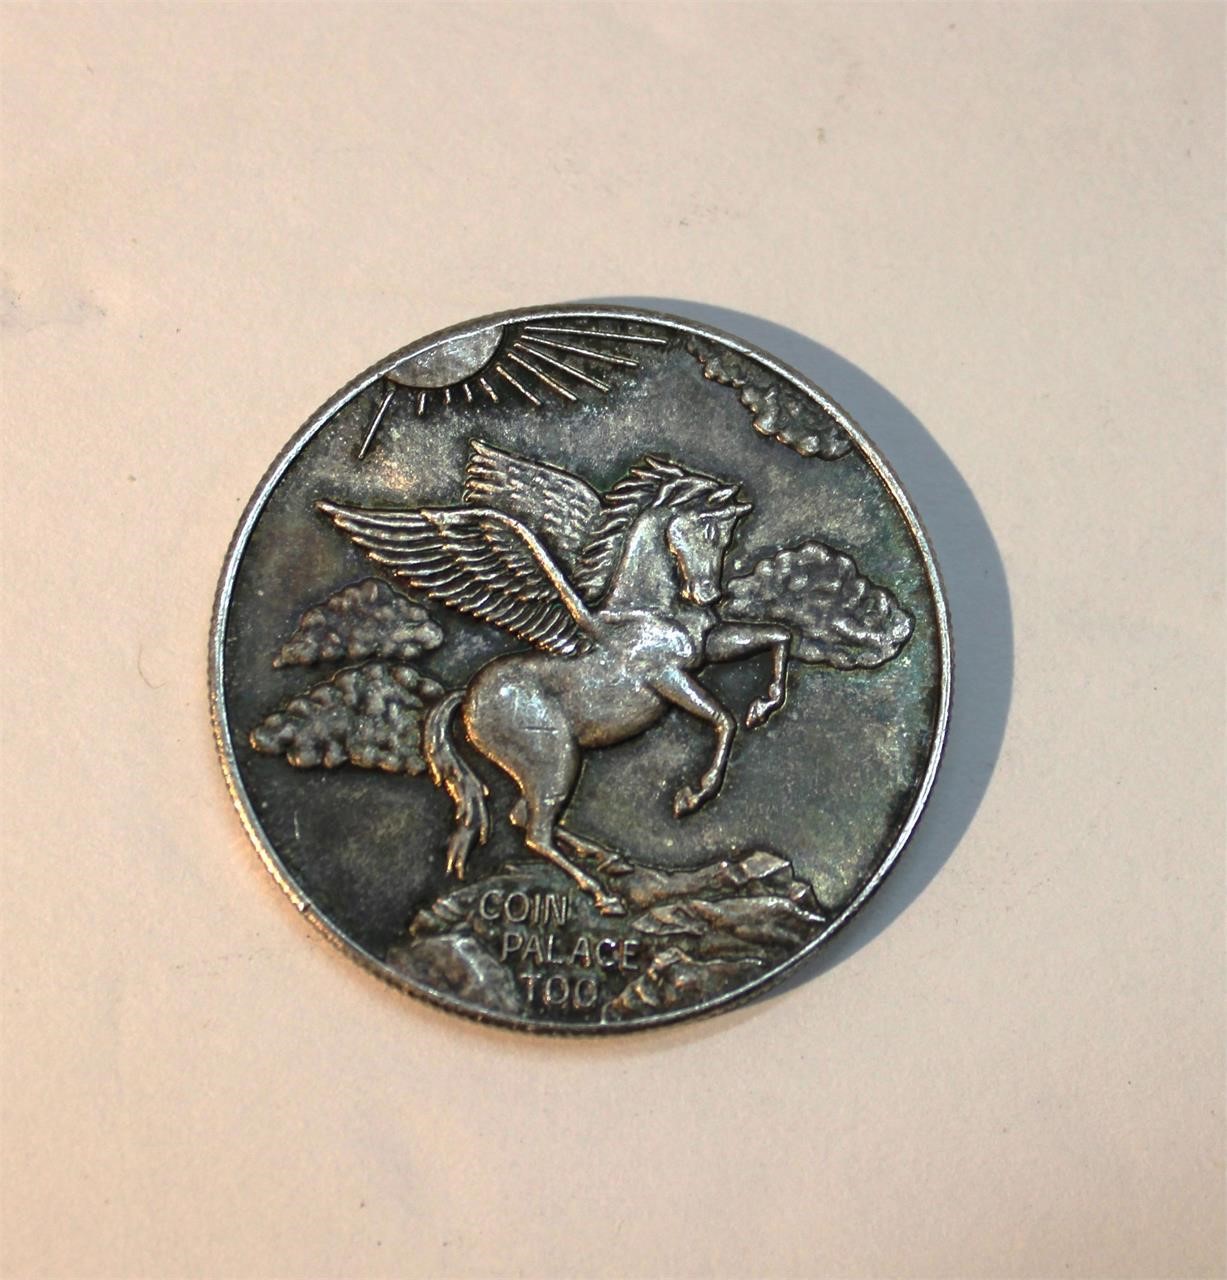 1 oz Coin Palace Silver Trade Coin